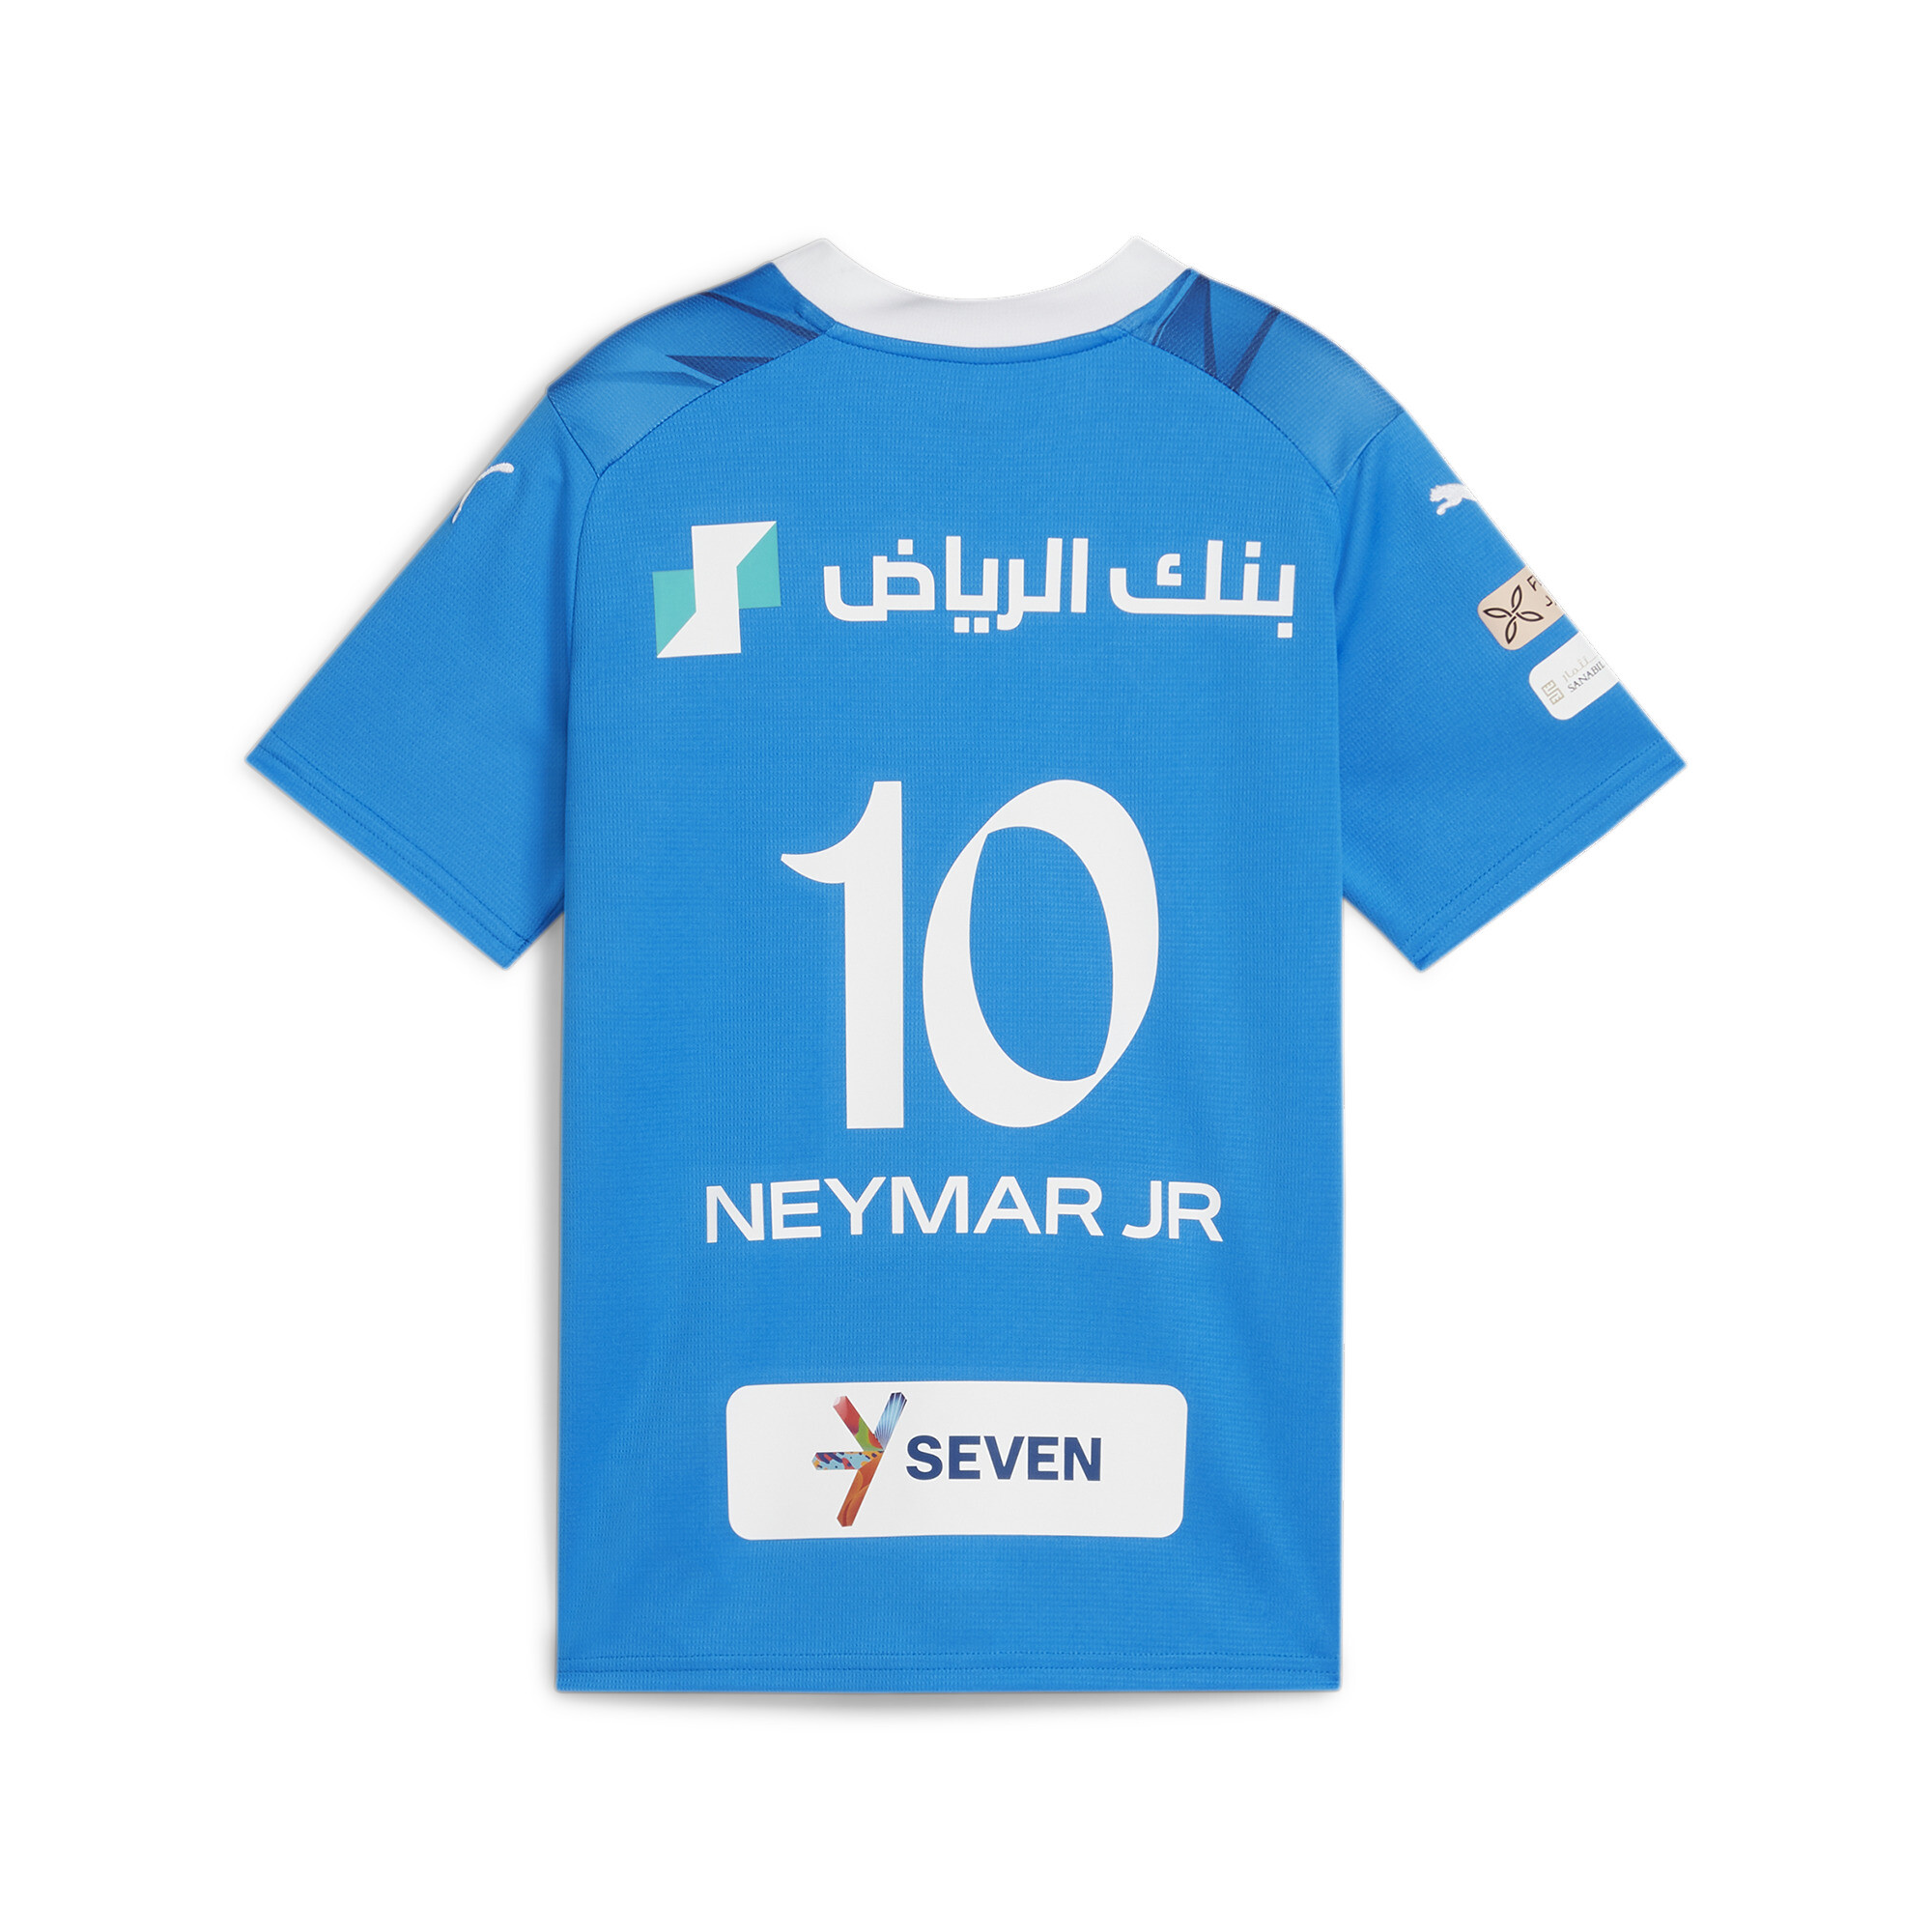 Puma Al Hilal Youth Football Home Neymar Jr Replica Jersey, Blue, Size 1-2Y, Clothing